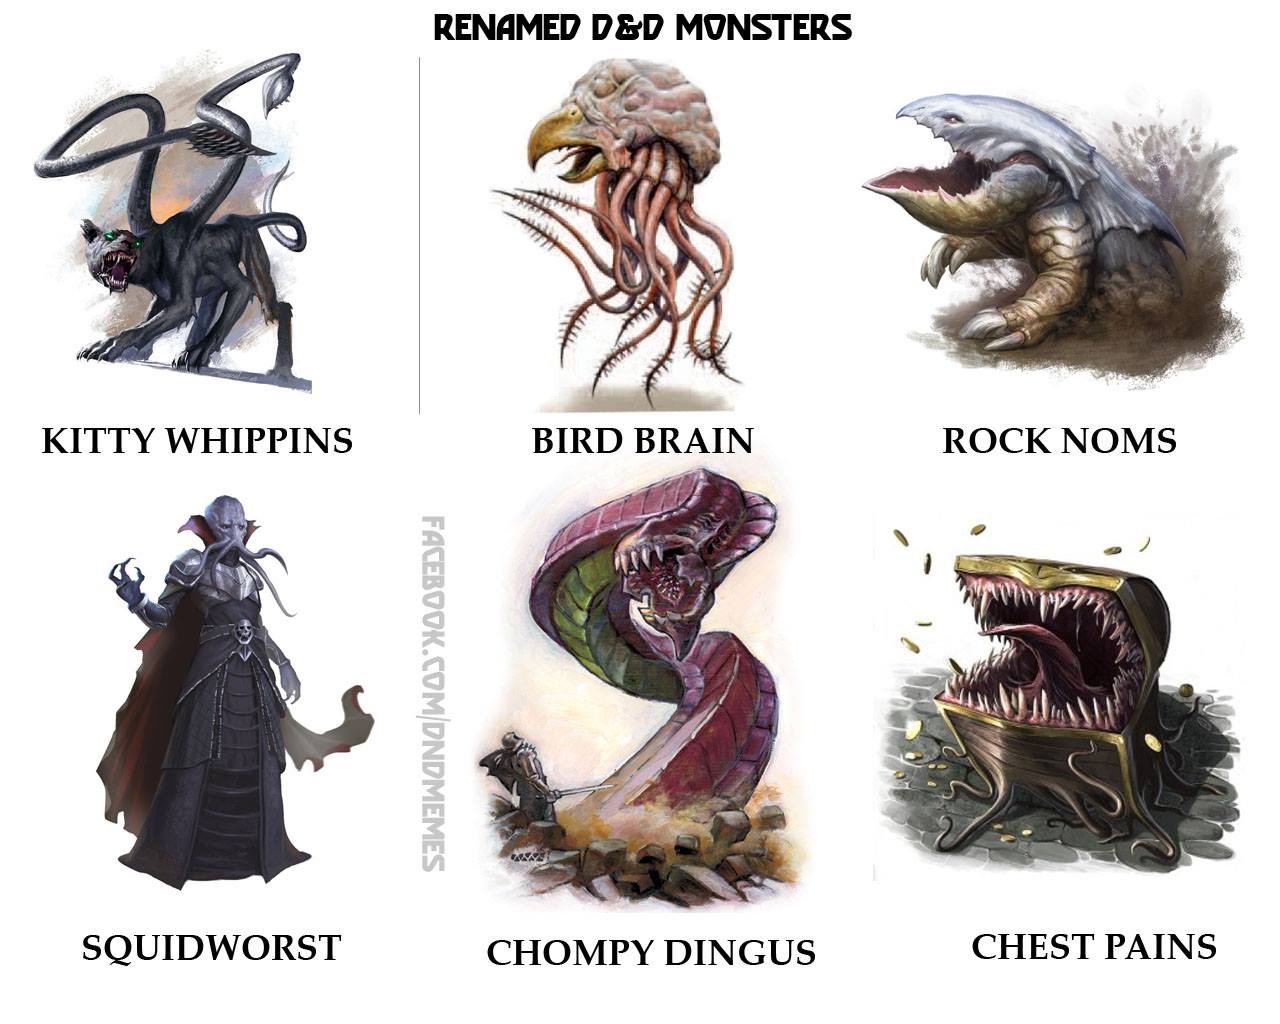 dnd-memes-renamed-monsters-11k